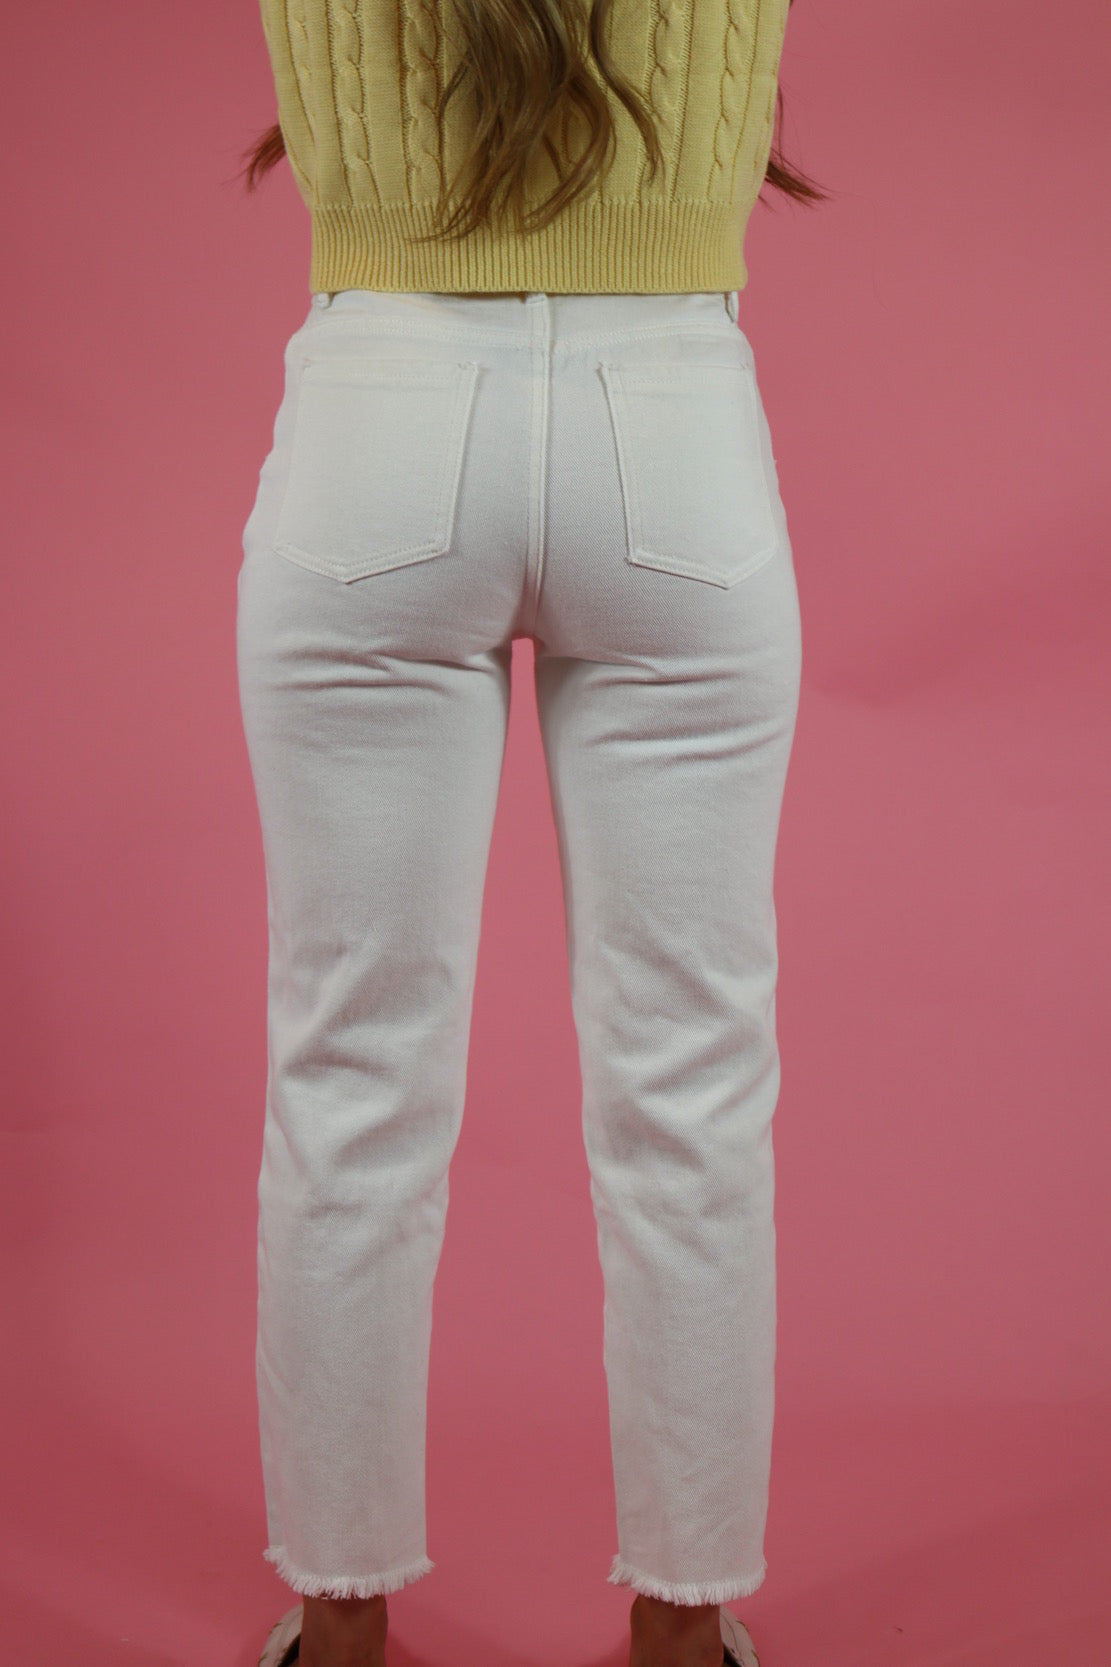 Summer Fling White Jeans